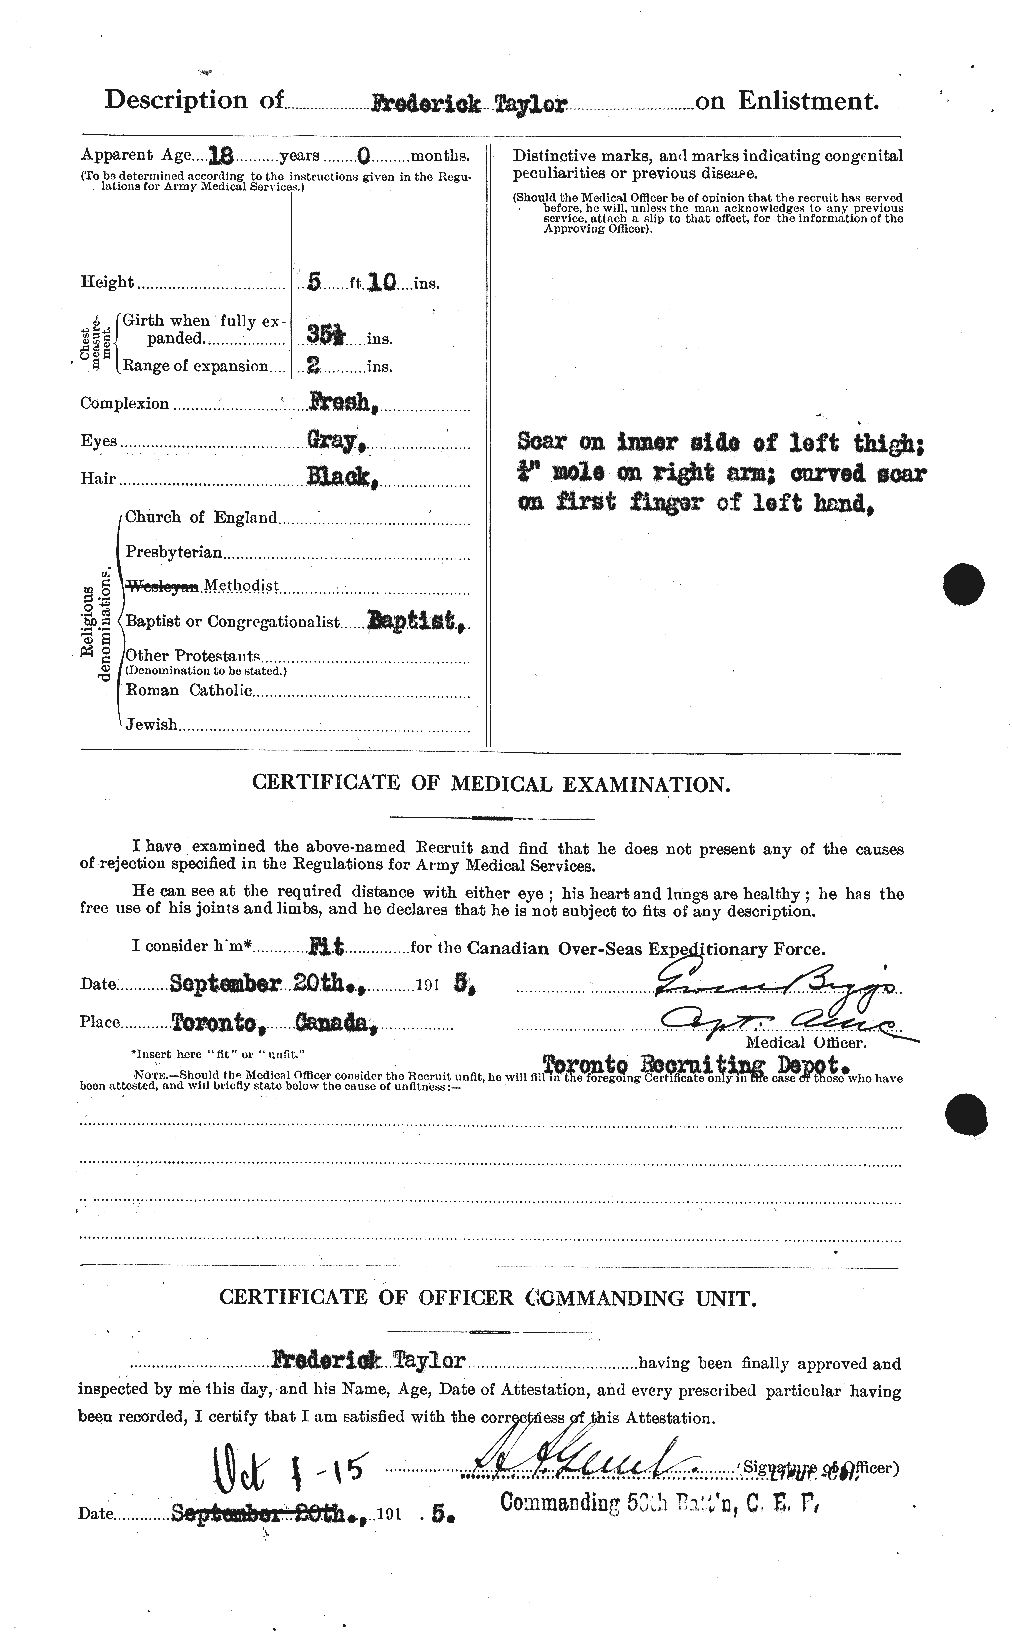 Dossiers du Personnel de la Première Guerre mondiale - CEC 625776b